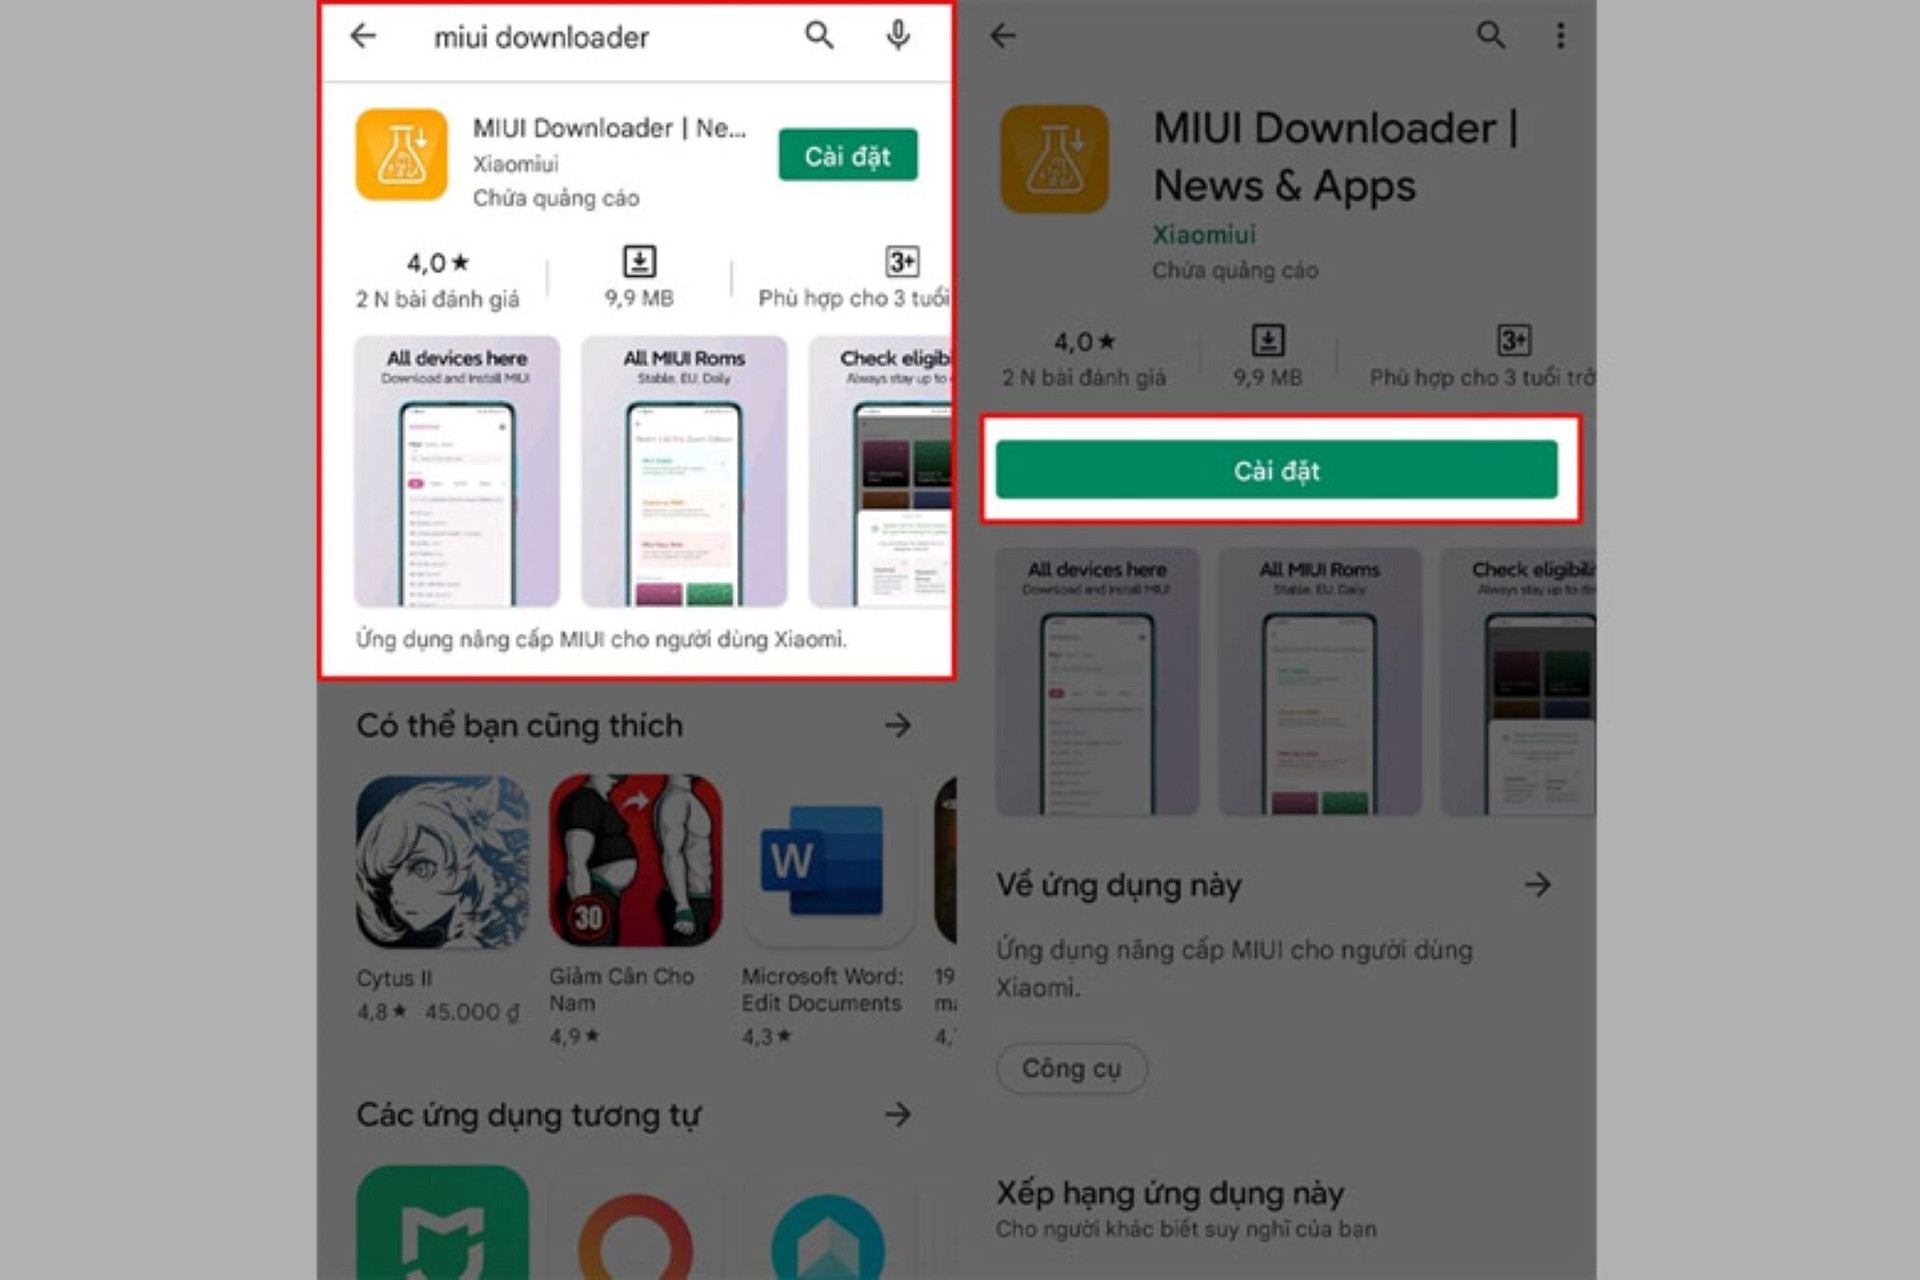 Lưu ý khi sử dụng MIUI Downloader để cập nhật hệ điều hành